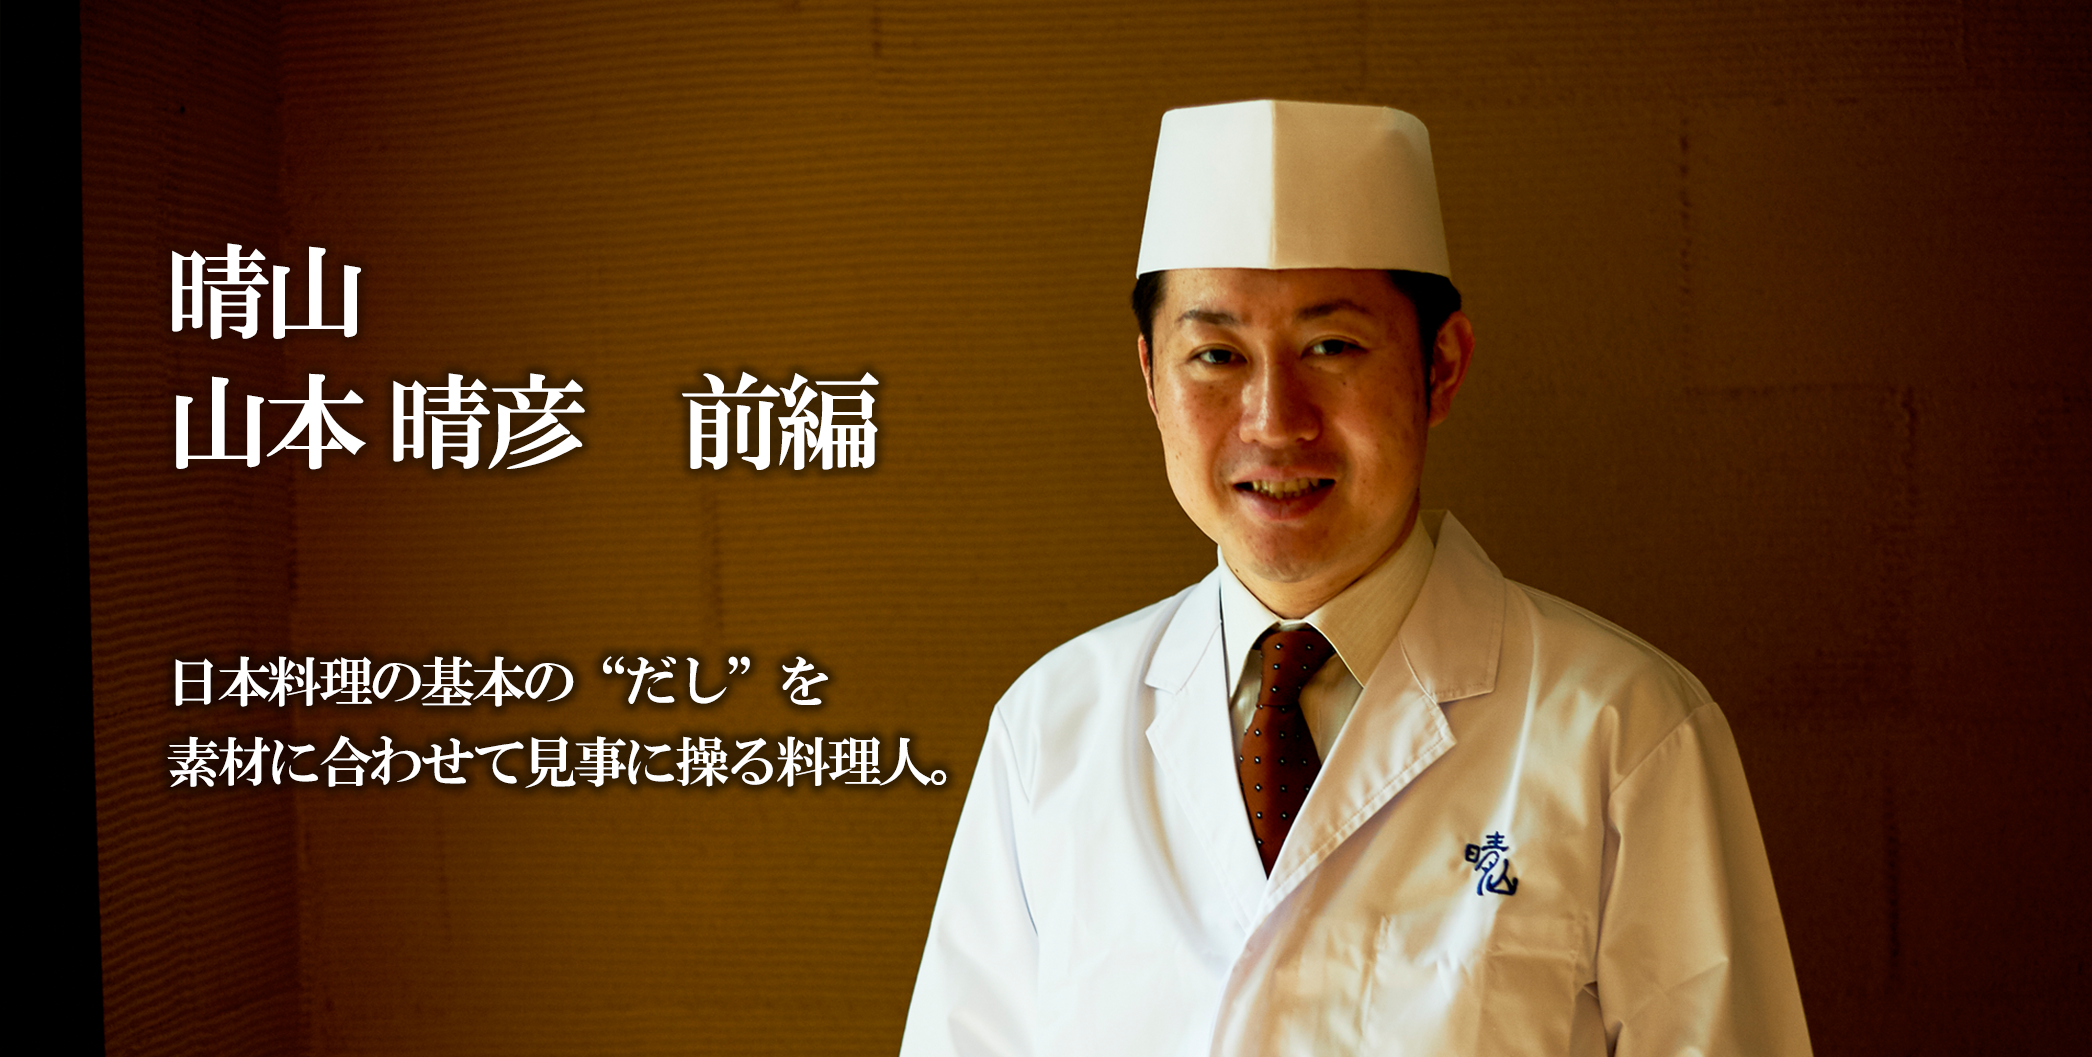 仕江府 九一三 / TESTSHOP 日本料理の基本の“だし”を 素材に合わせて見事に操る料理人。